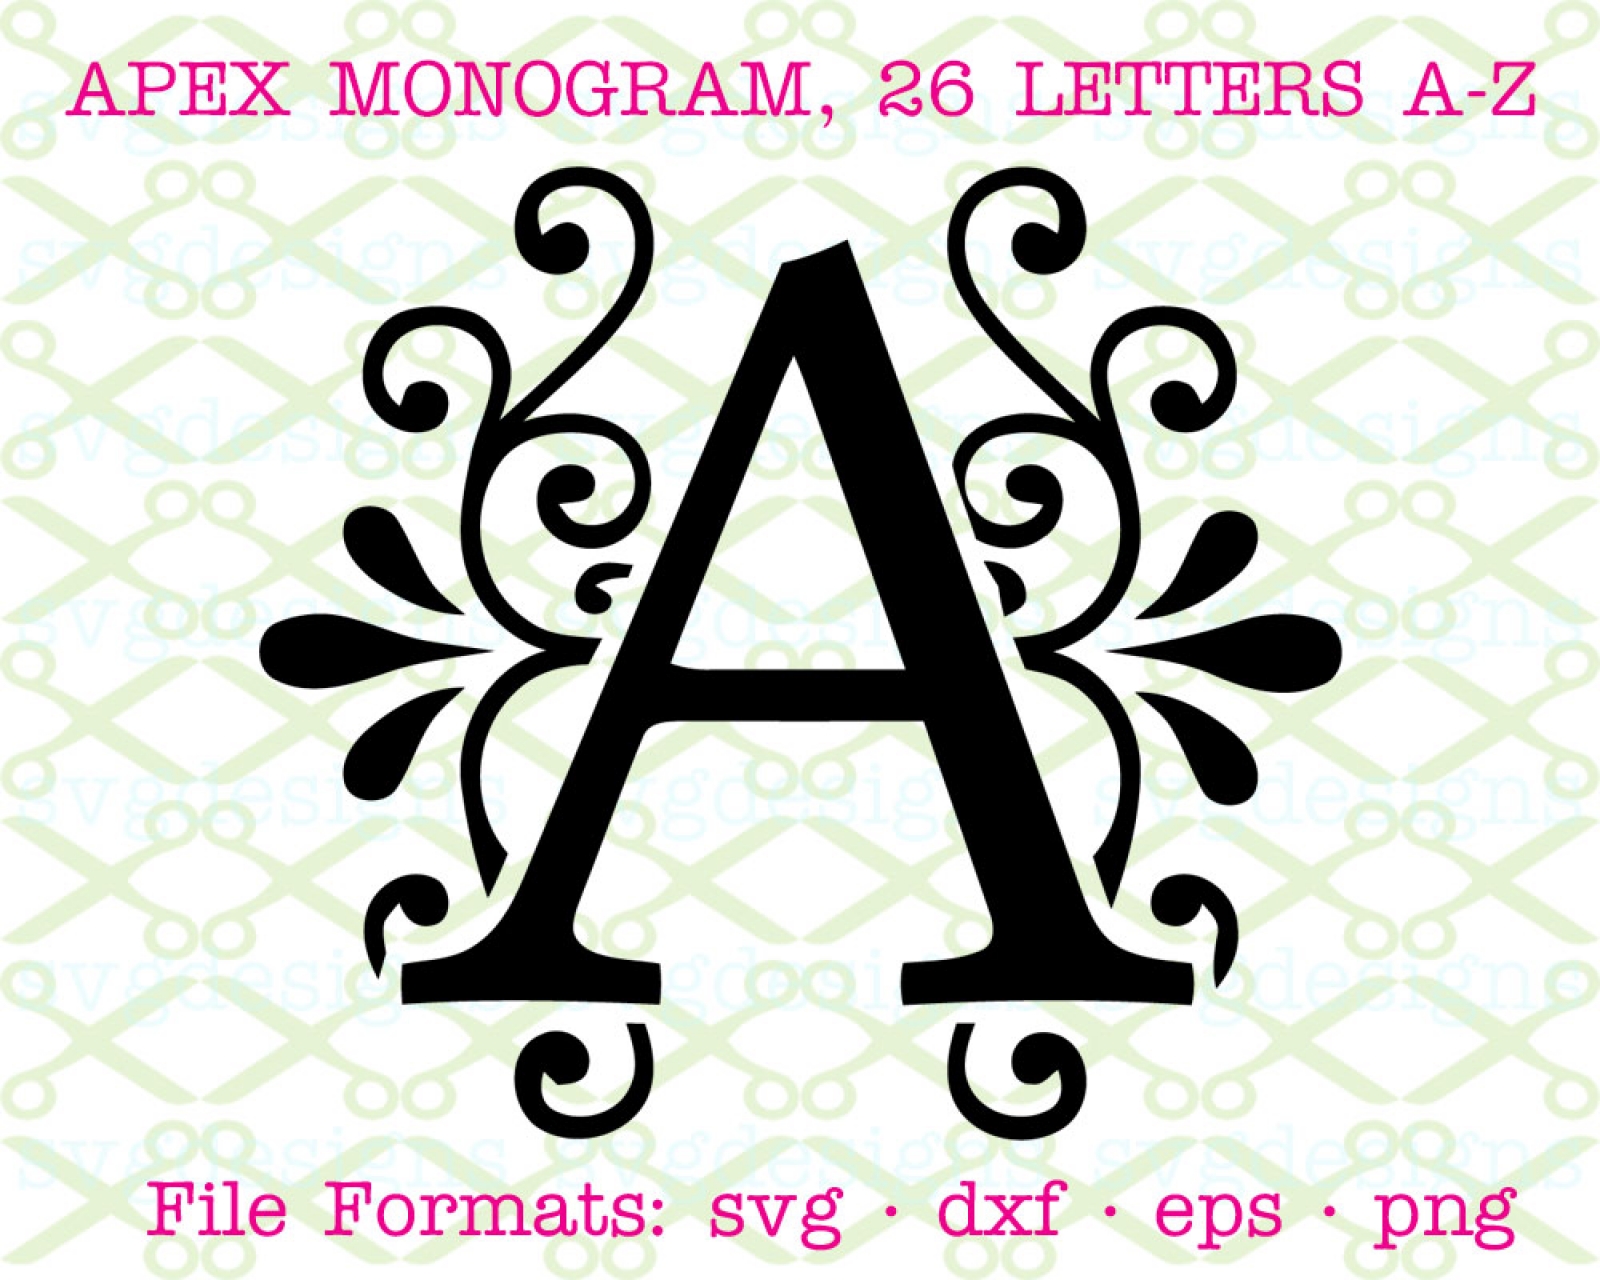 Download APEX MONOGRAM SVG FONT-Cricut & Silhouette Files SVG DXF ...